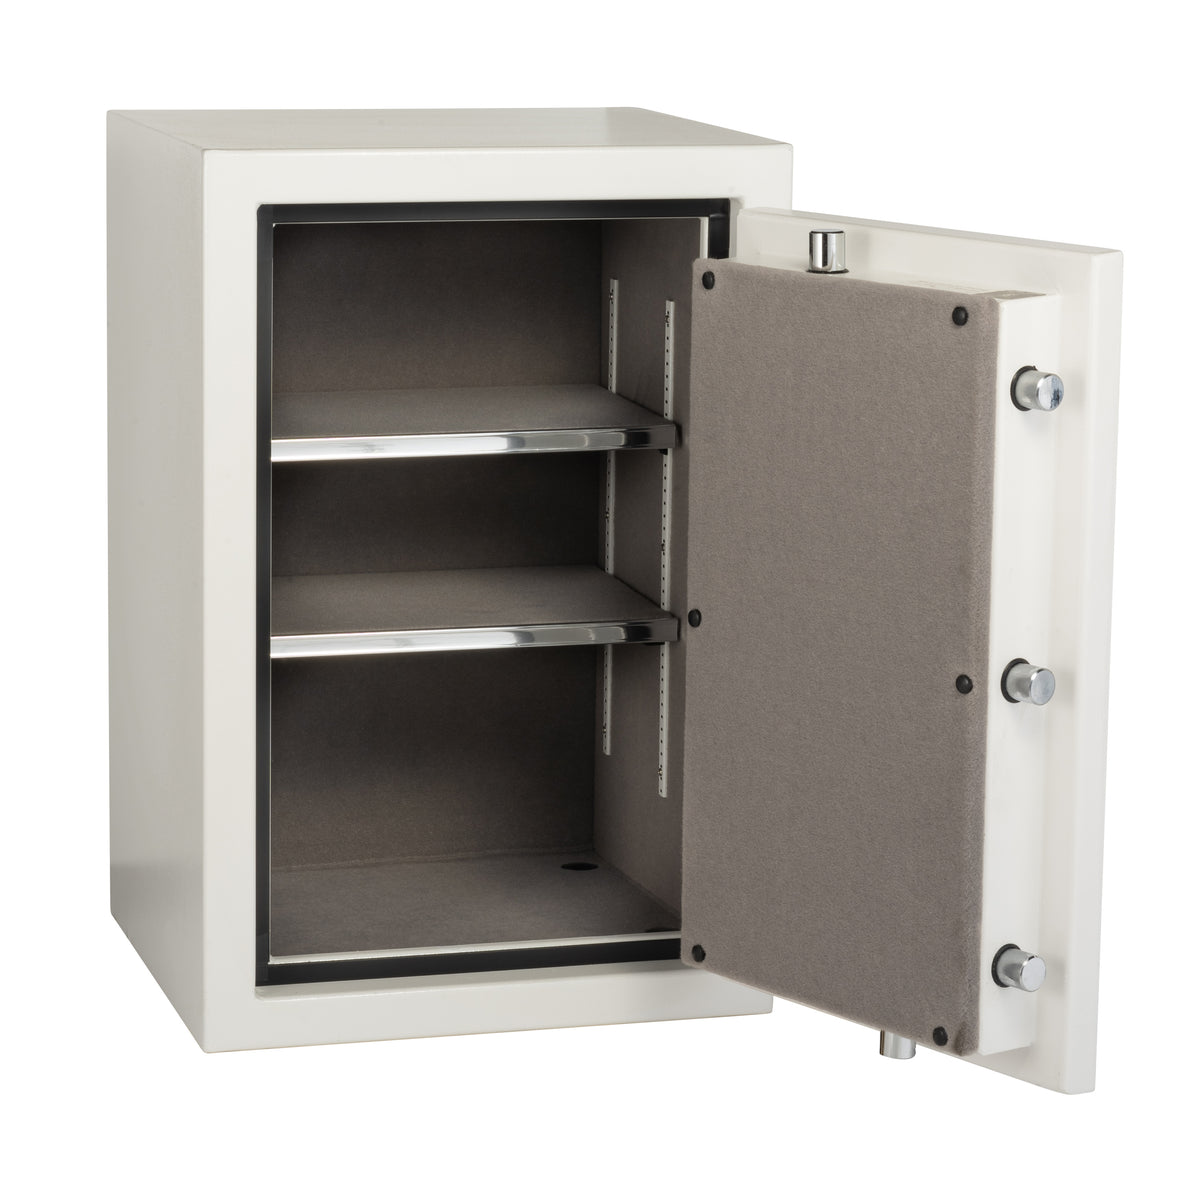 SafeandVaultStore BC3019 Burglar Fire Safe Door Open with Shelves